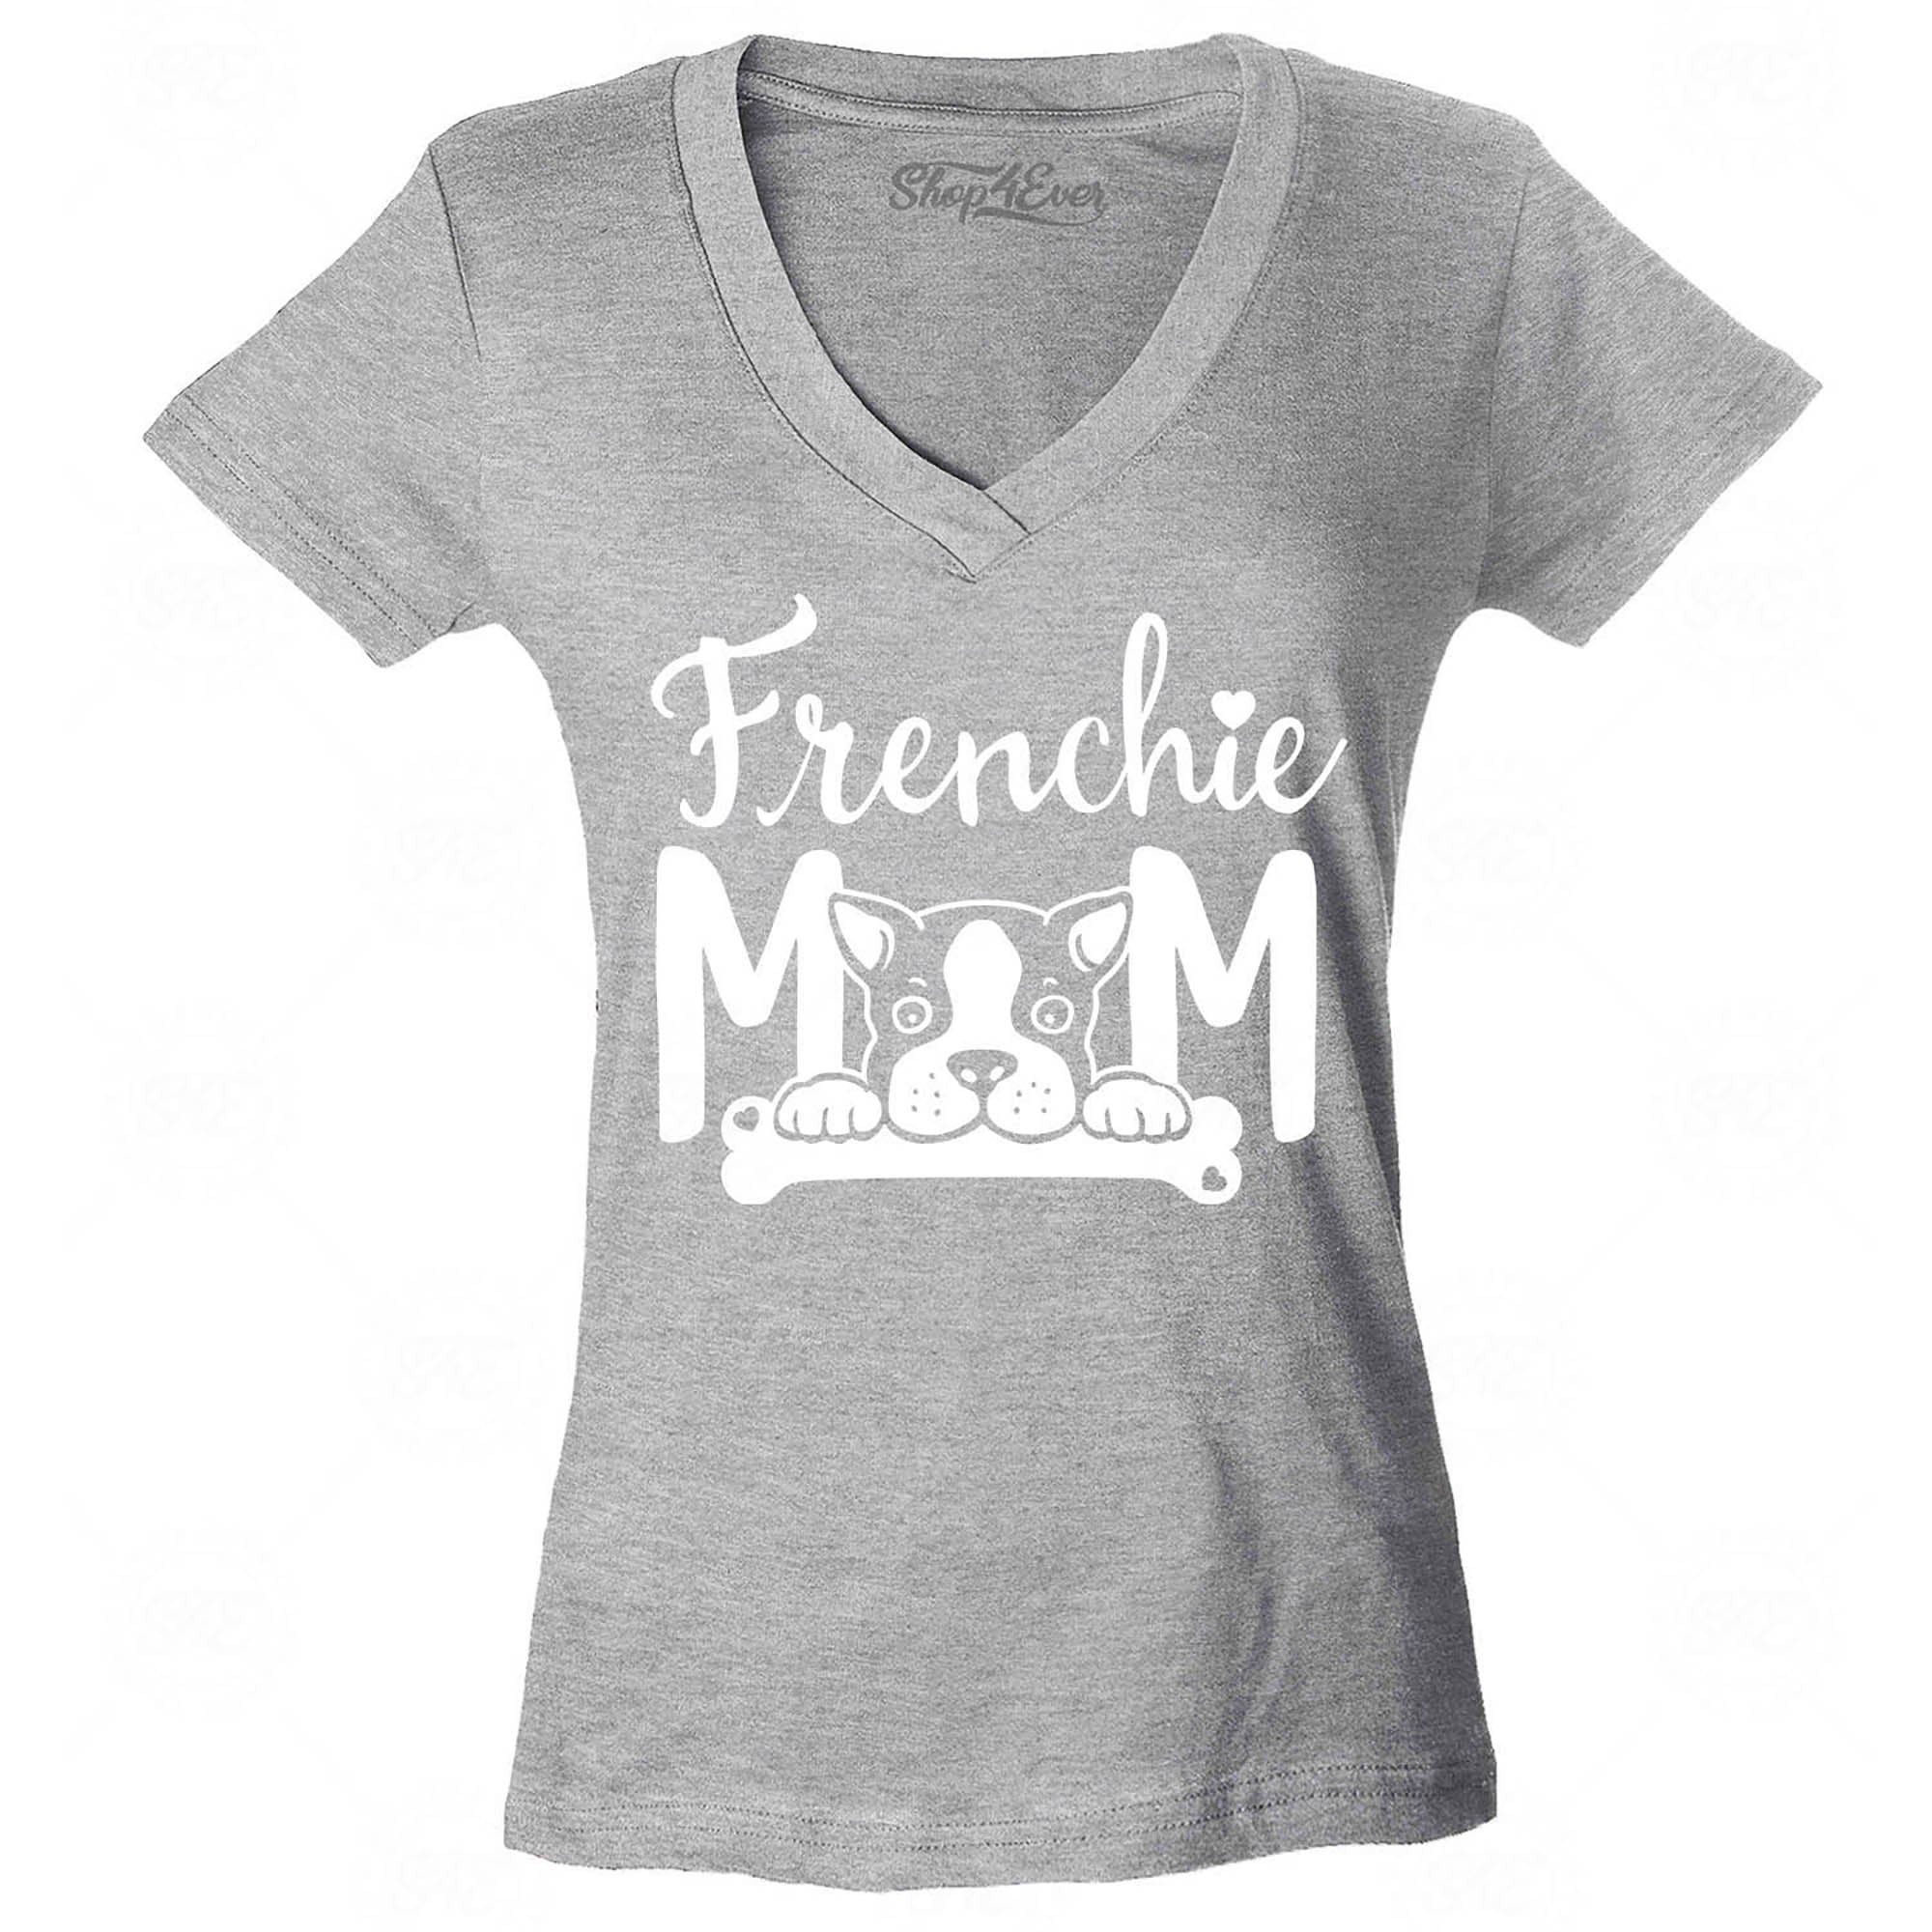 Frenchie Mom Women's V-Neck T-Shirt Slim Fit